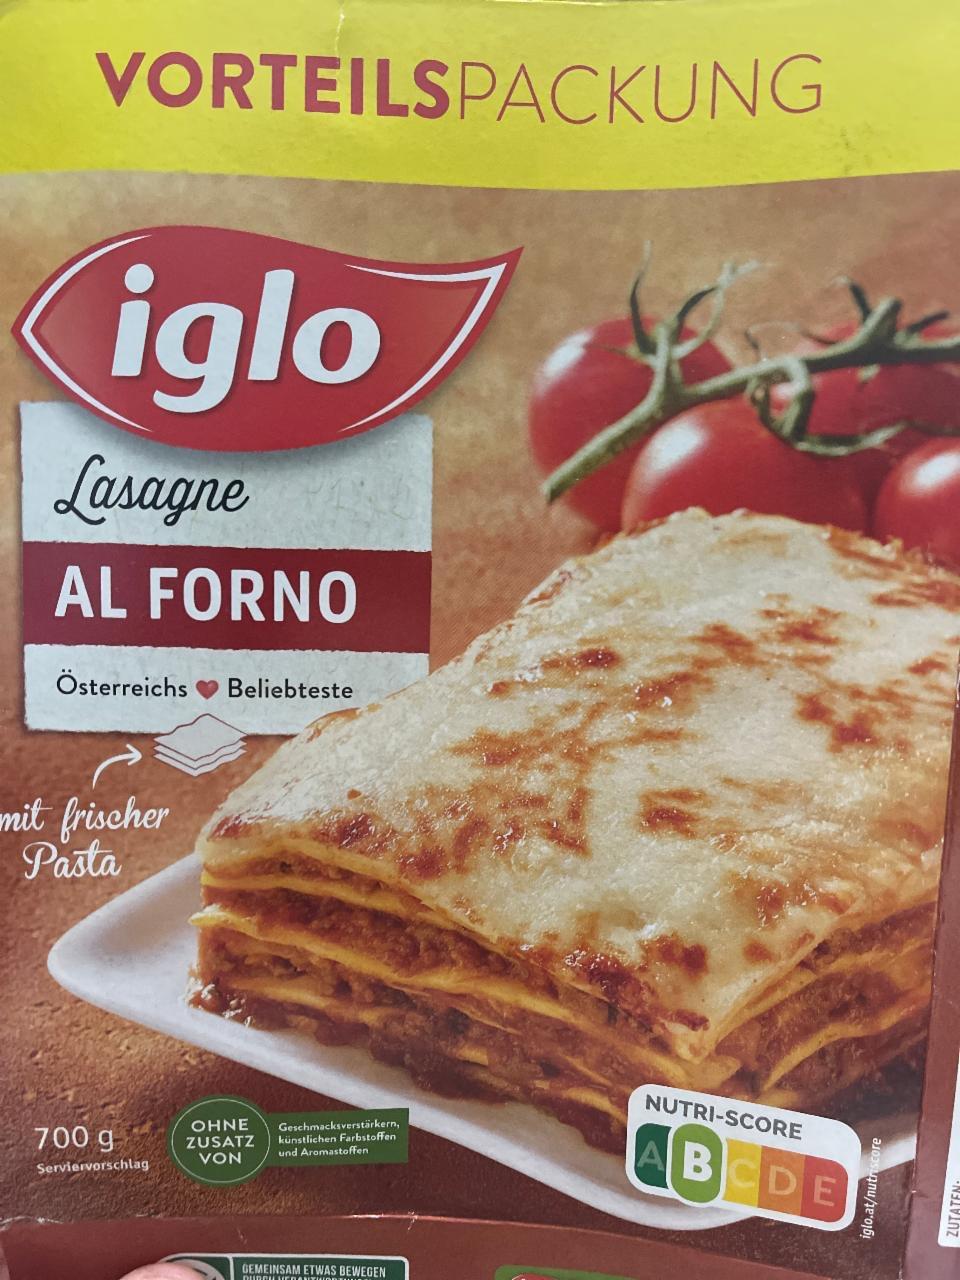 Képek - Lasagne Al forno Iglo